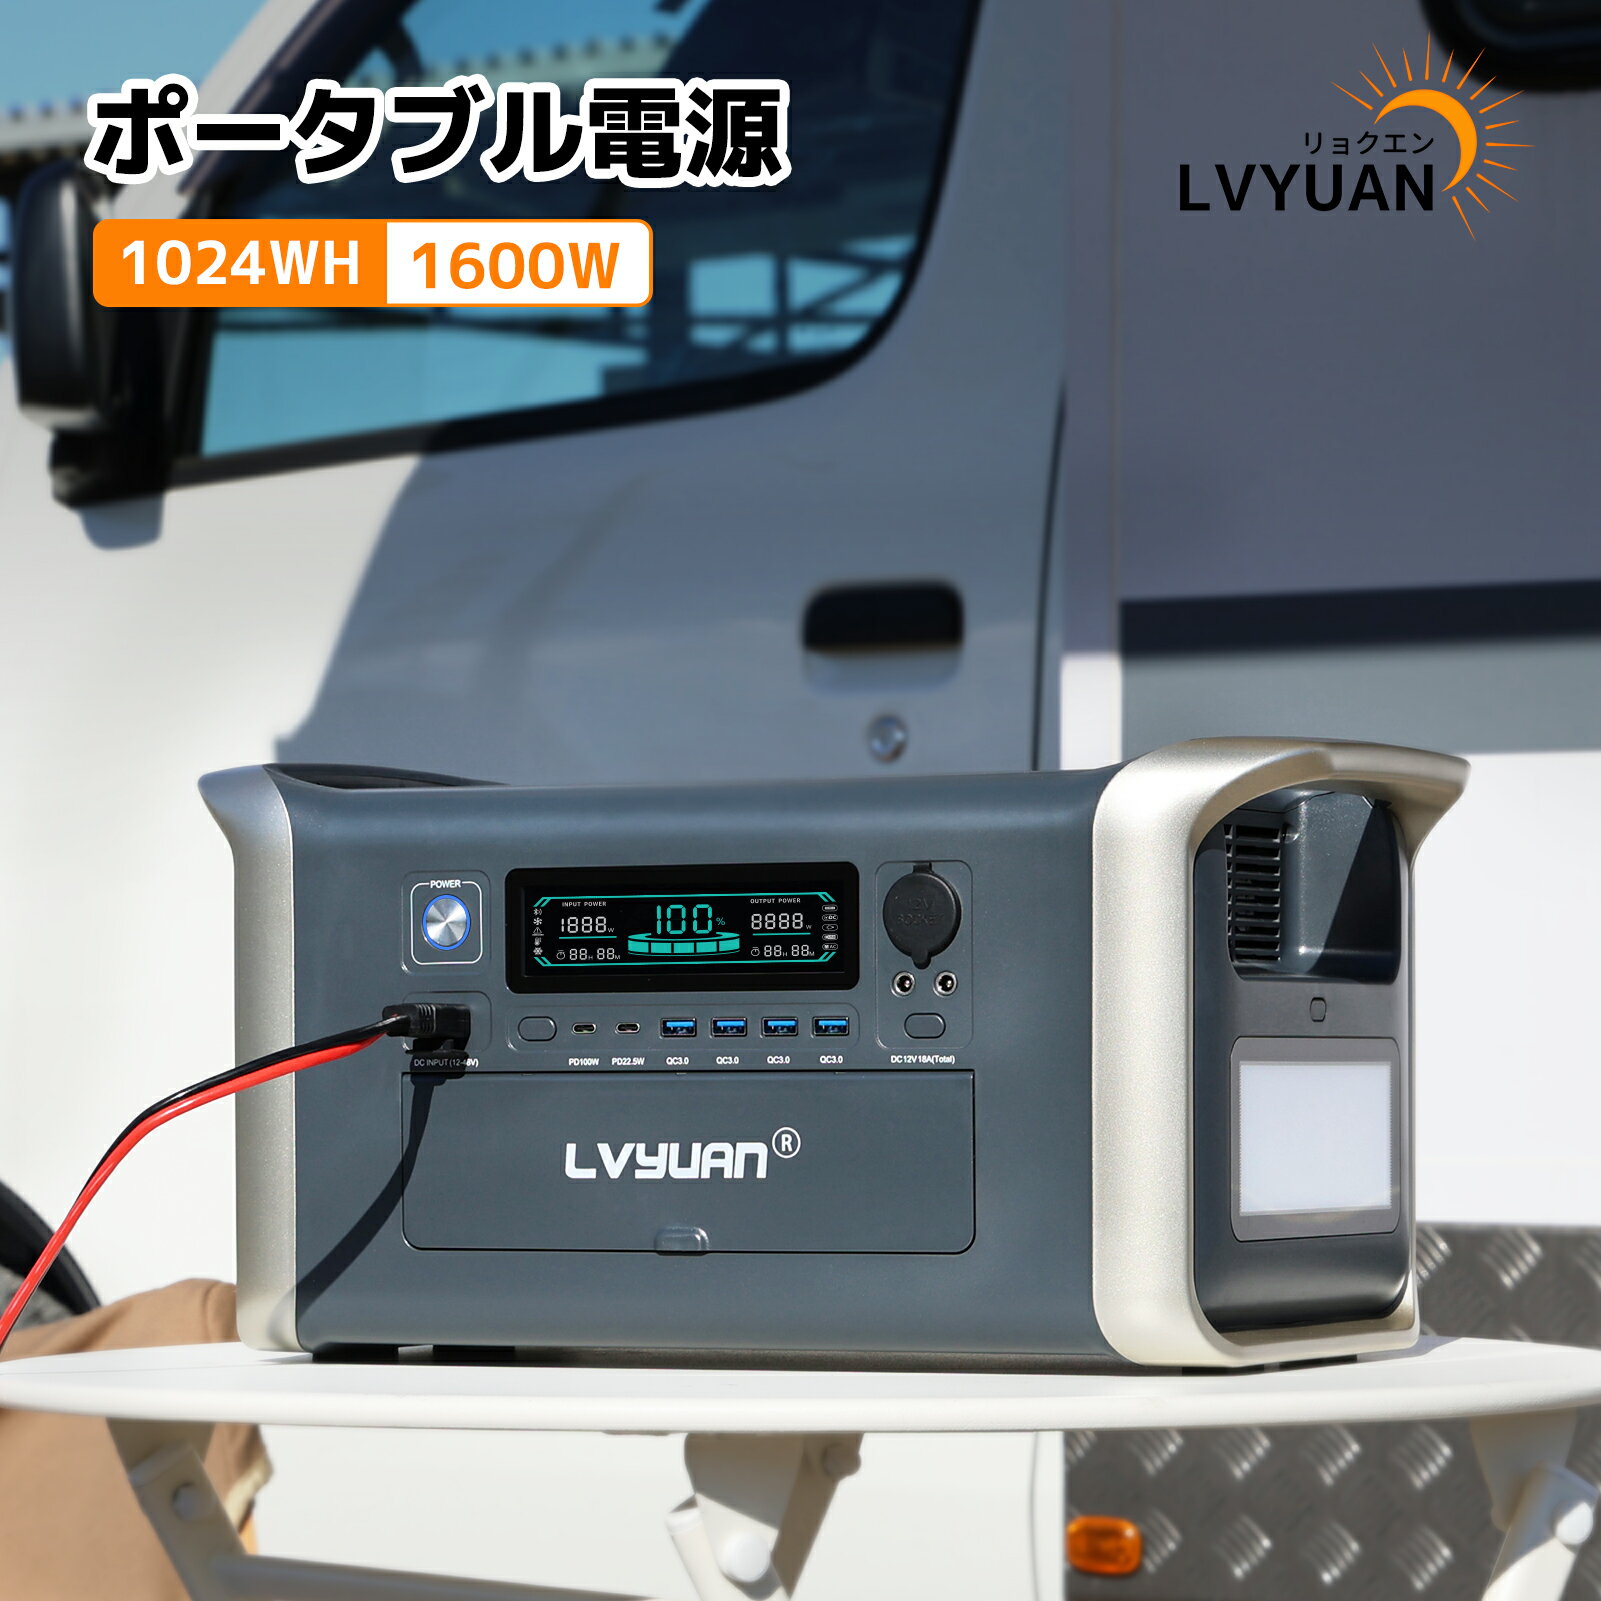 LVYUAN(リョクエン) ポータブル電源 